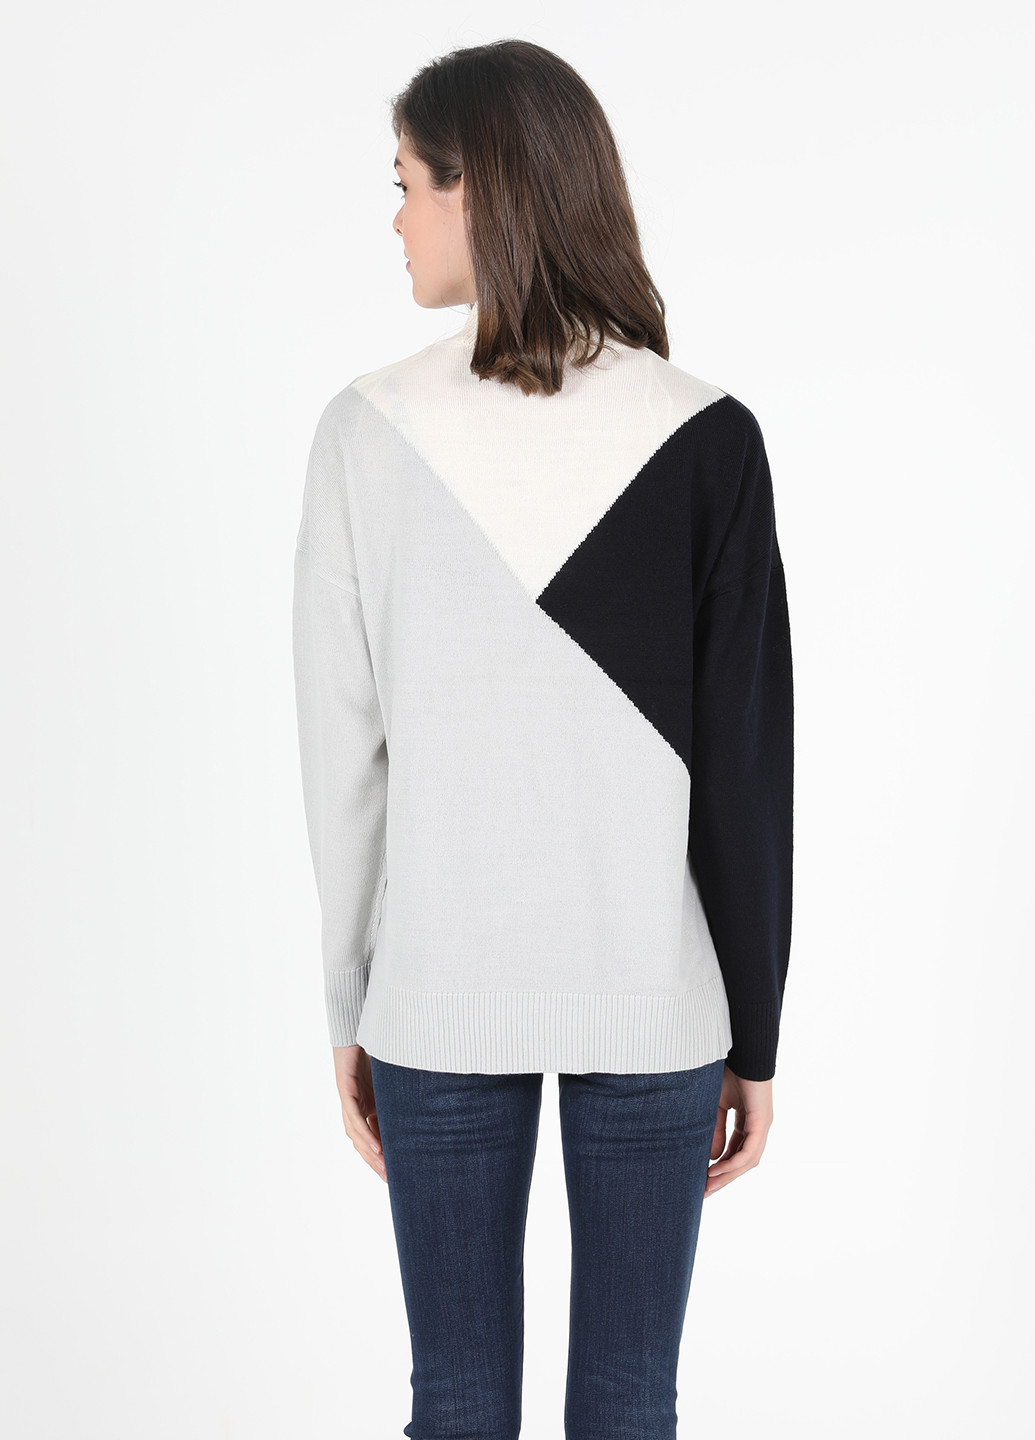 Светло-серый зимний свитер джемпер Colin's